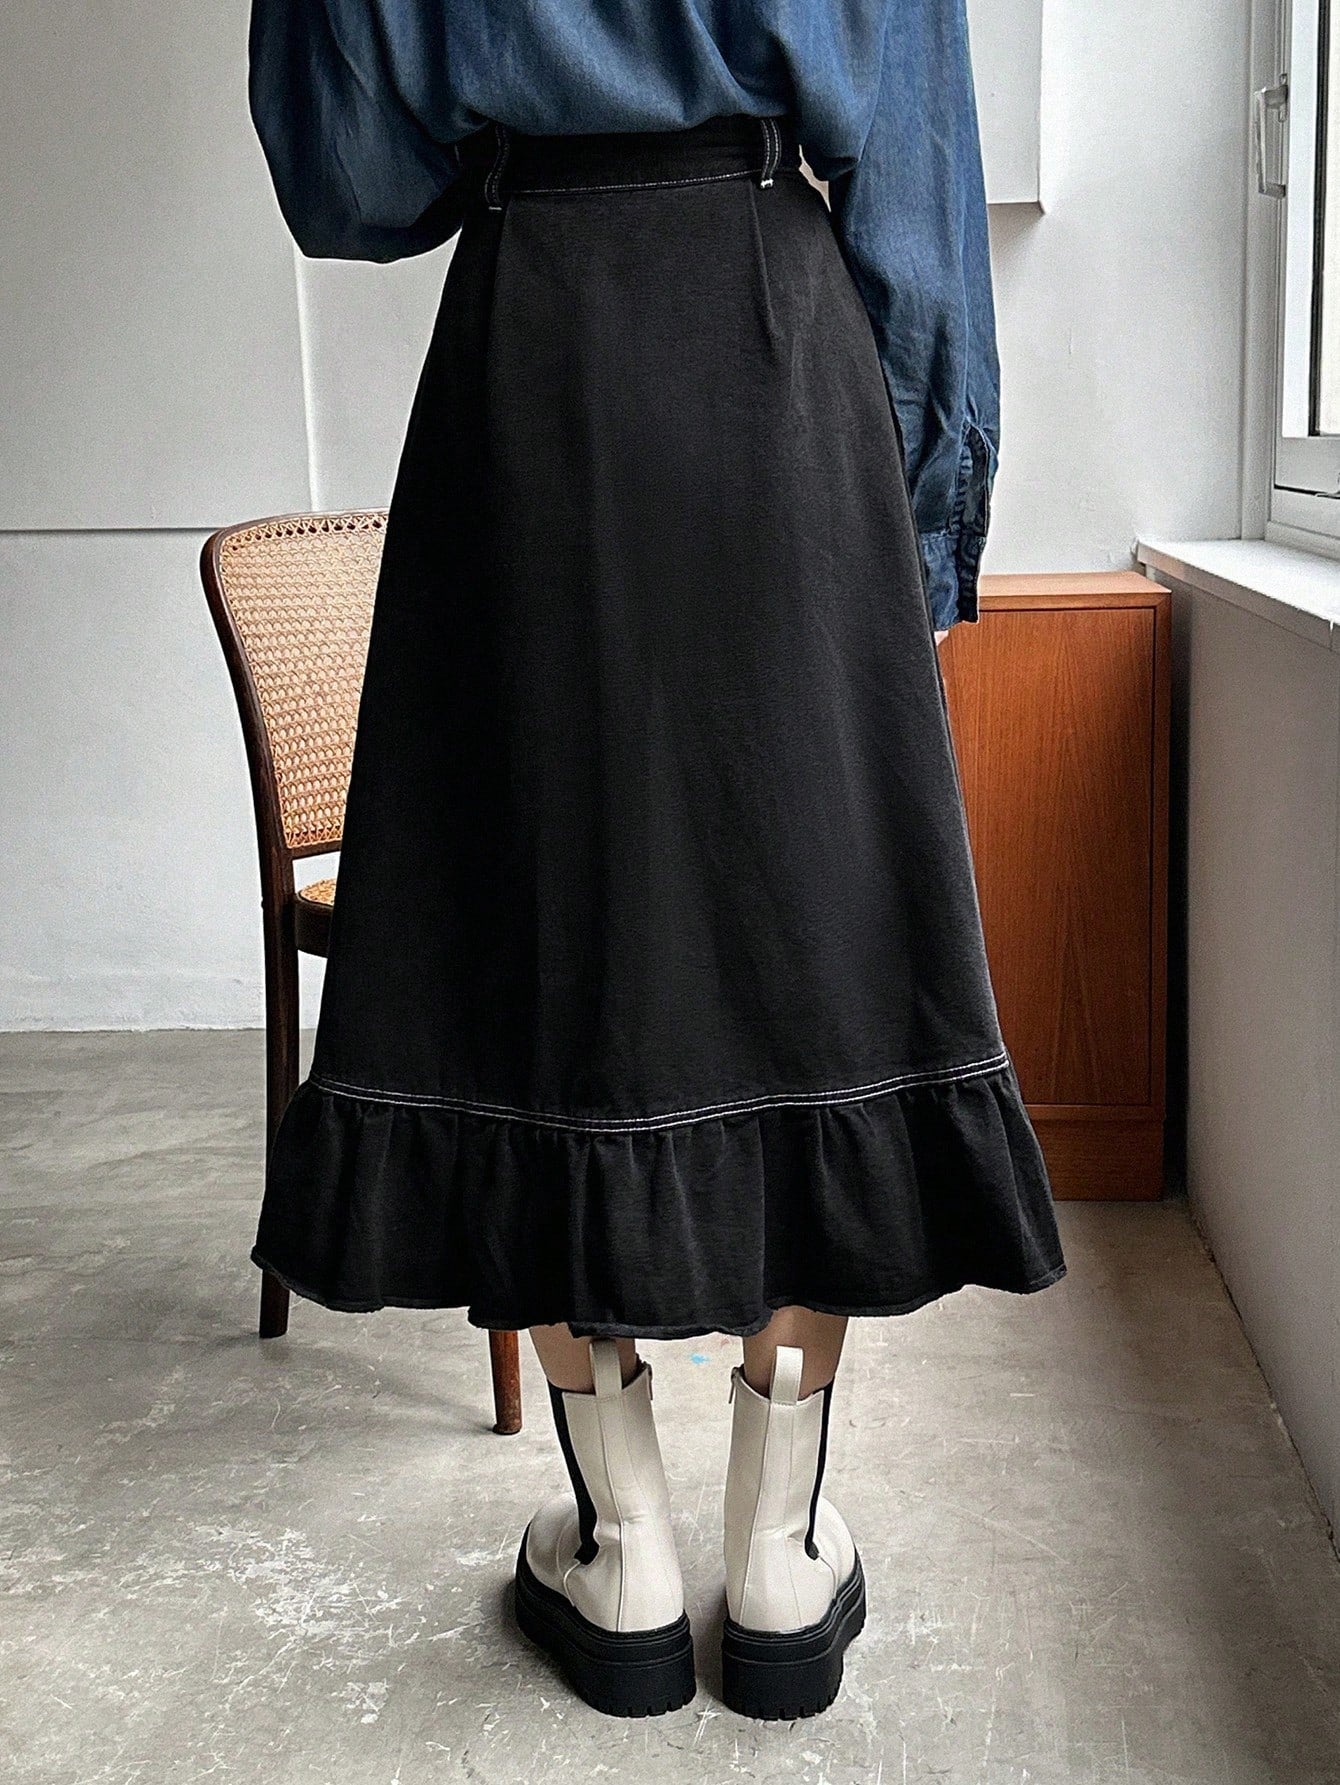 Women's Denim Skirt With Exposed Stitches, Ruffled Hem